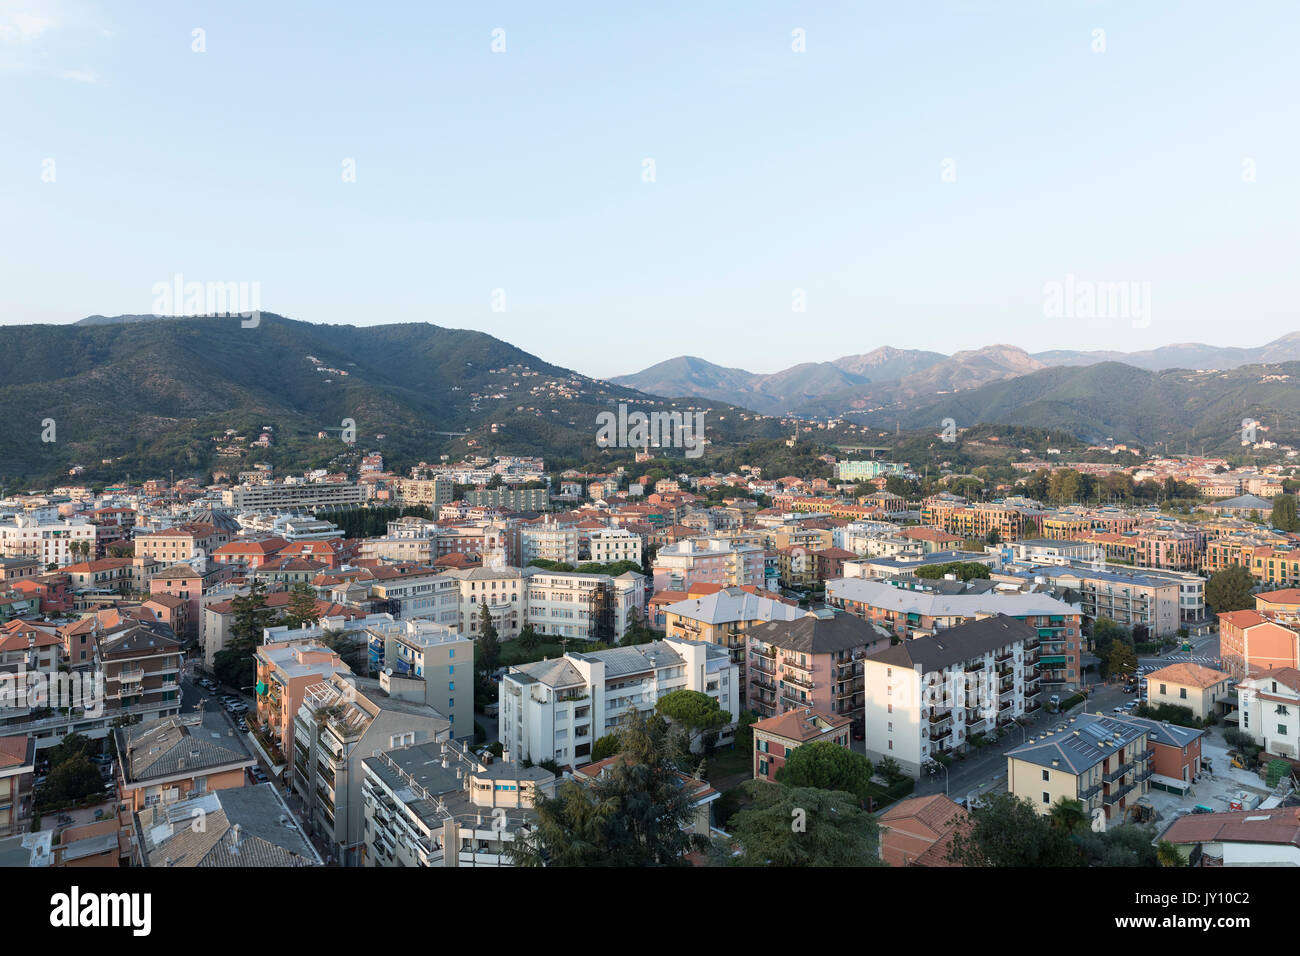 Scenic view of cityscape, Sestri Levante, Liguria, Italy Stock Photo